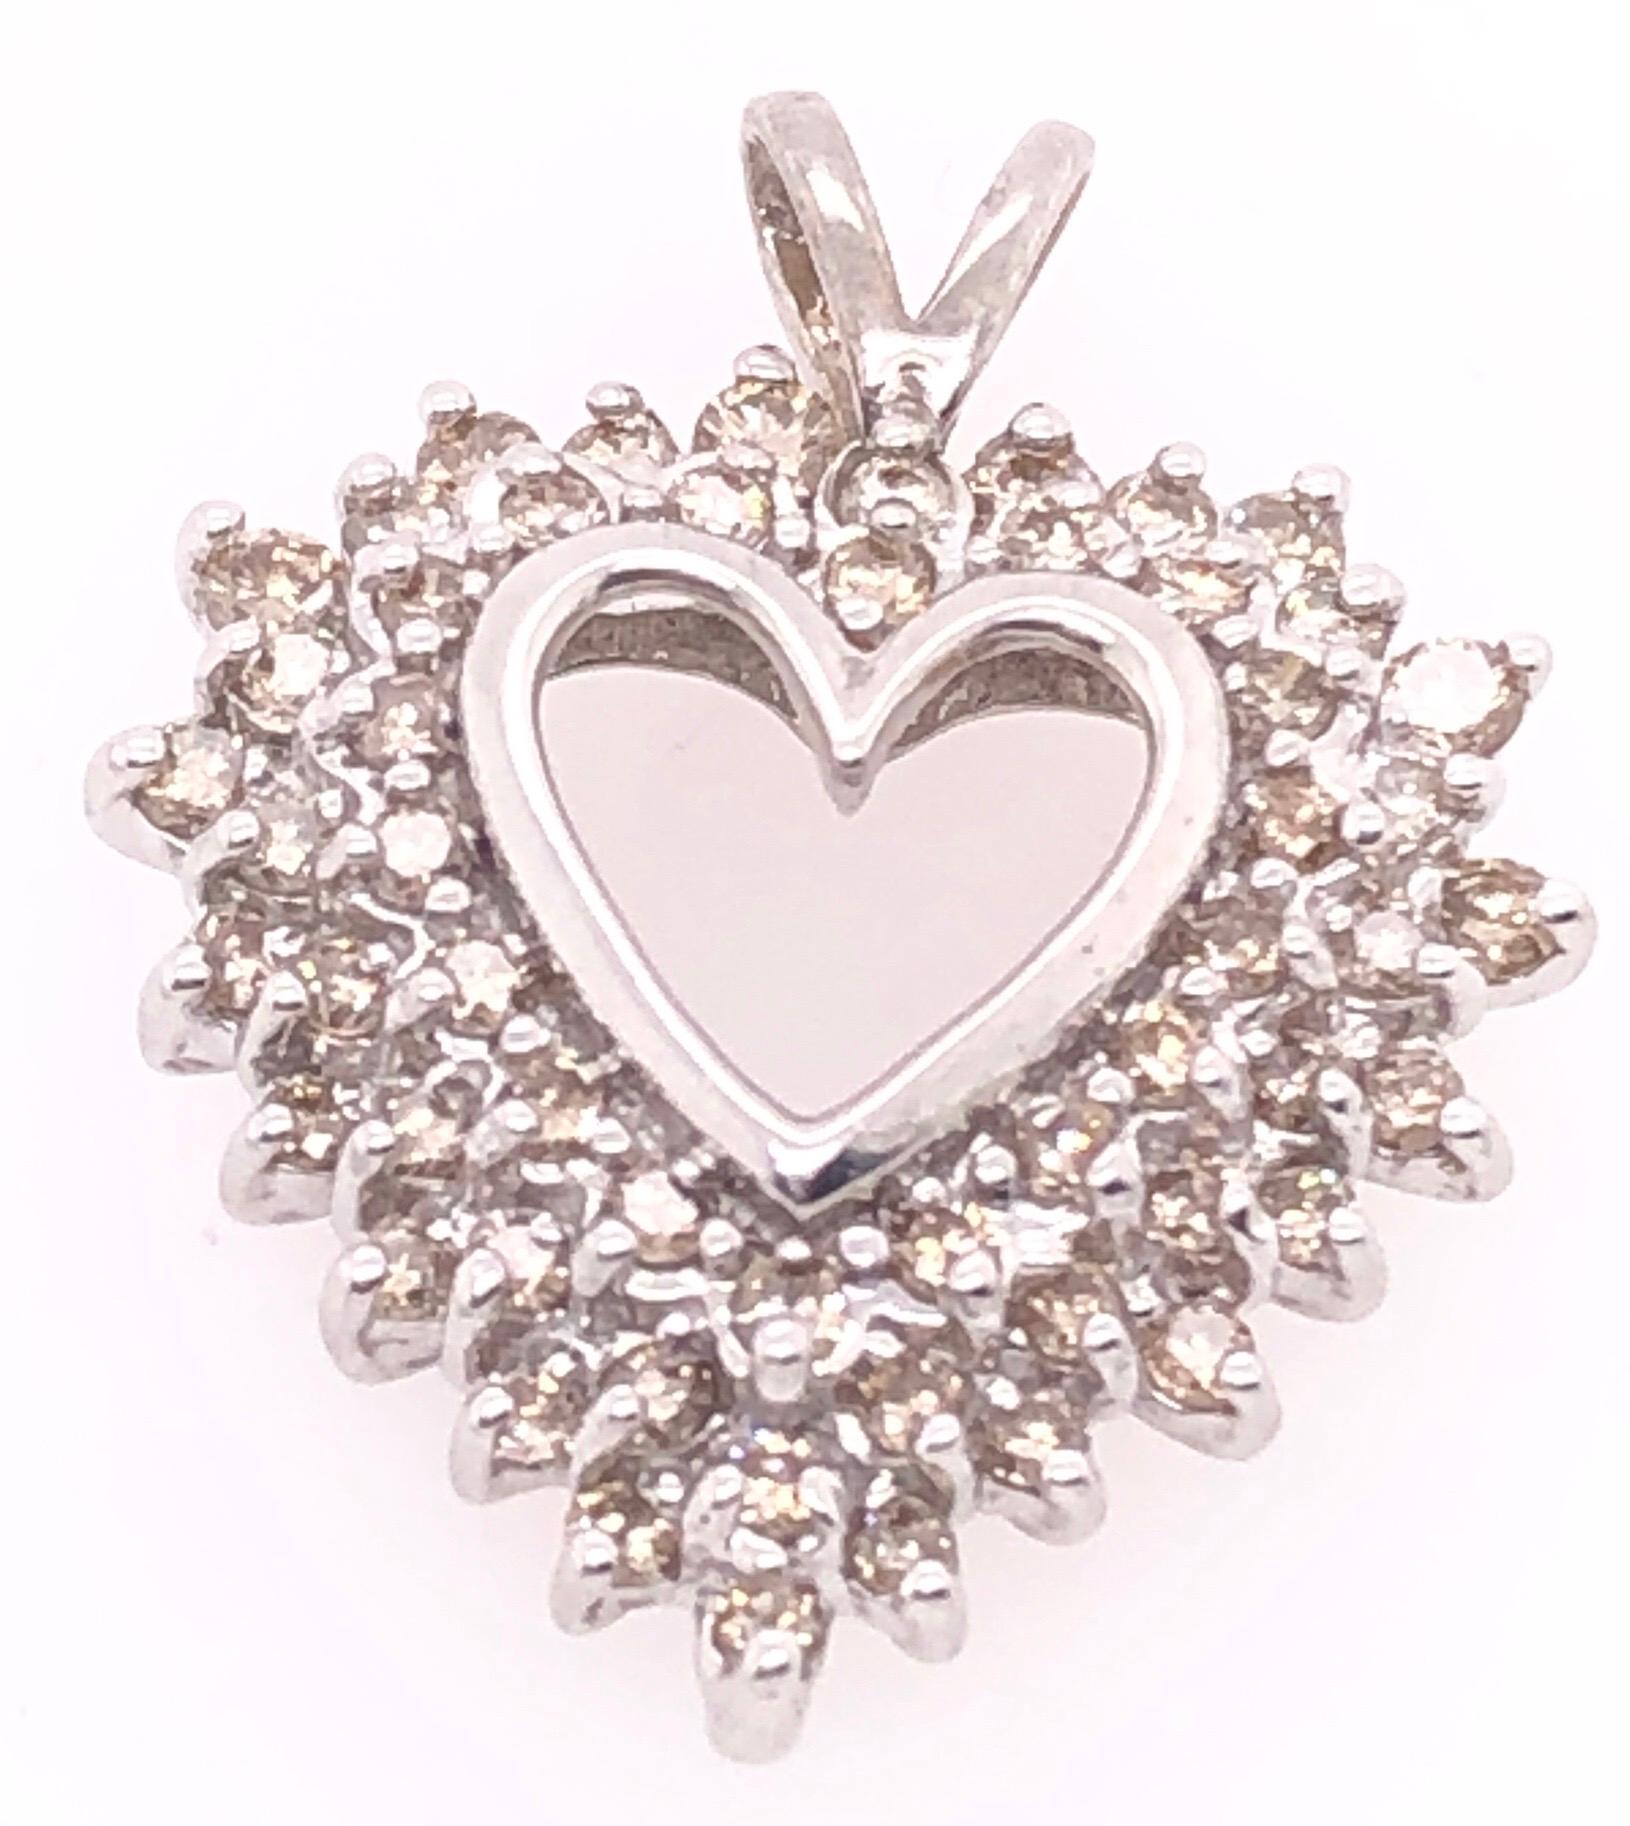 14 Karat Weißgold Herz-Anhänger mit runden Diamanten 1,25 Gesamtgewicht der Diamanten.
4,23 Gramm Gesamtgewicht.